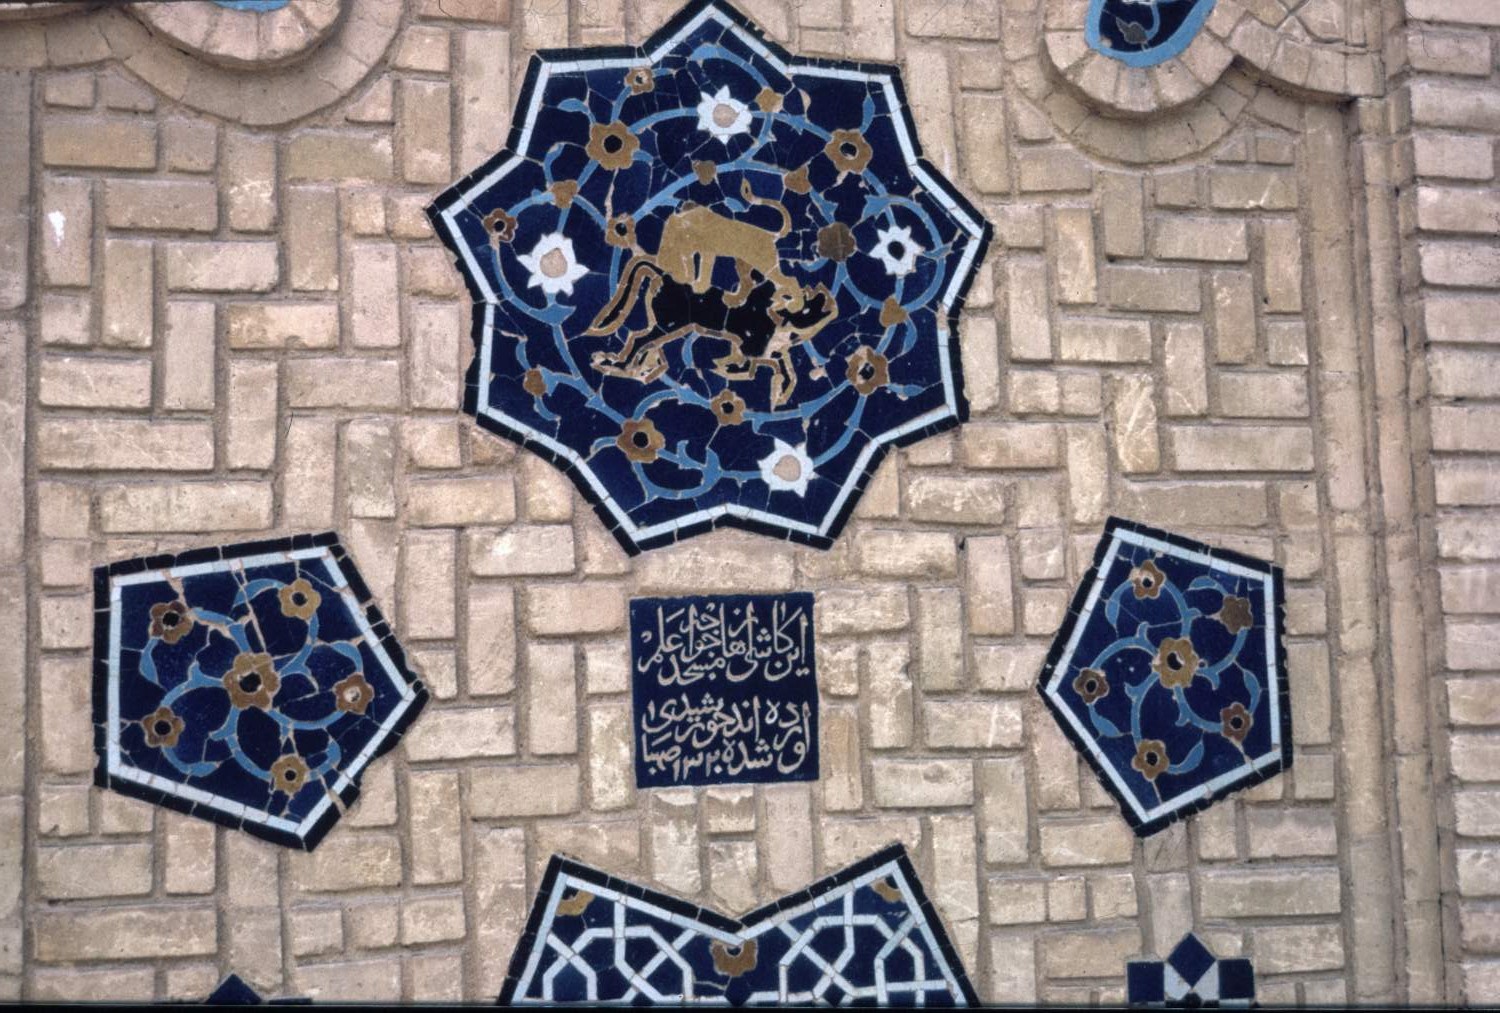 Detail of tile mosaic panels.